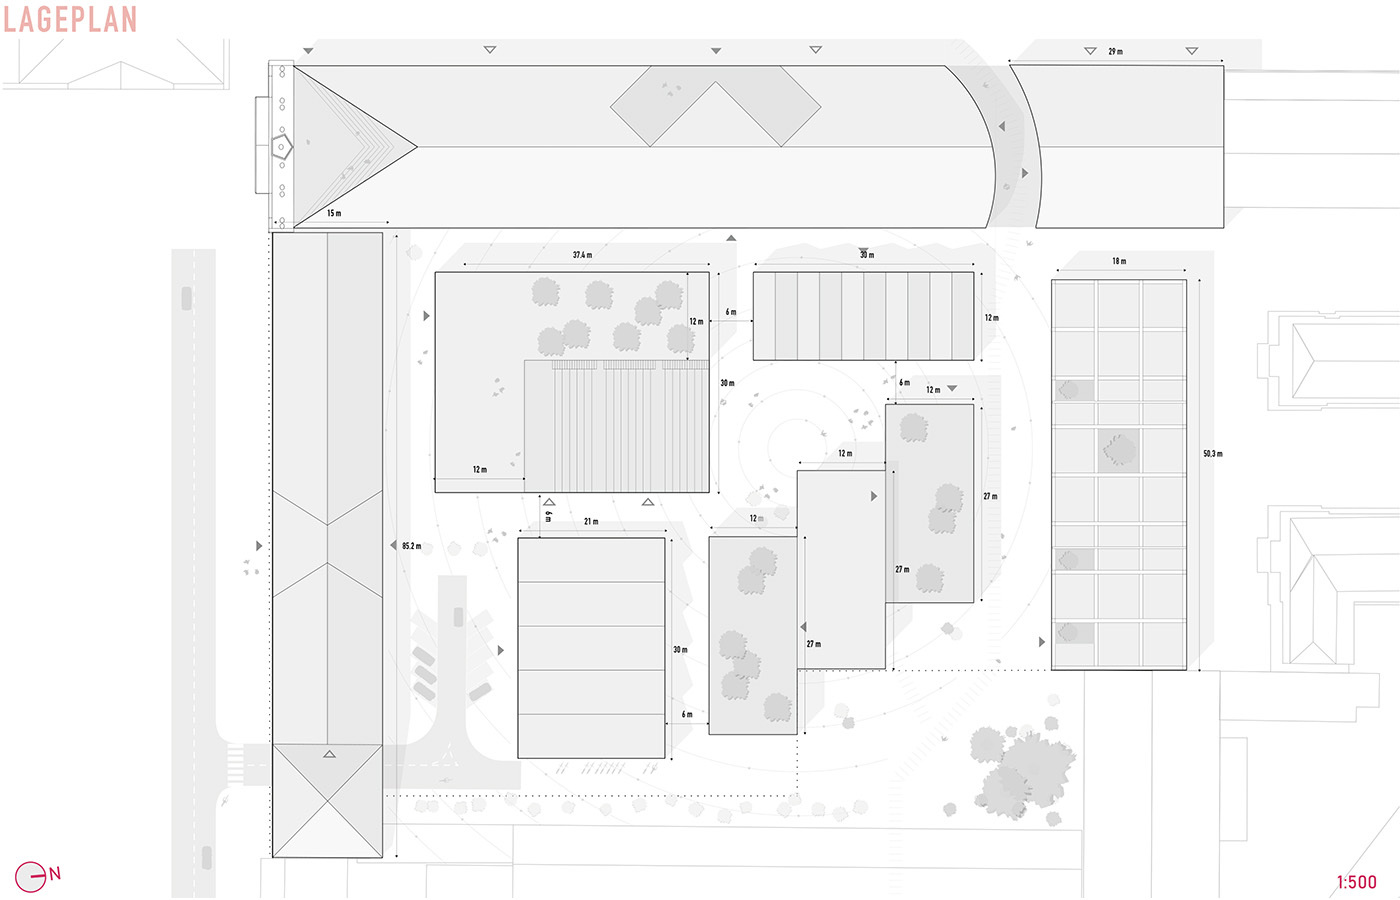 Grafik: Lageplan des Quartiers mit Darstellung der Gebäudekörper und Dachansichten.